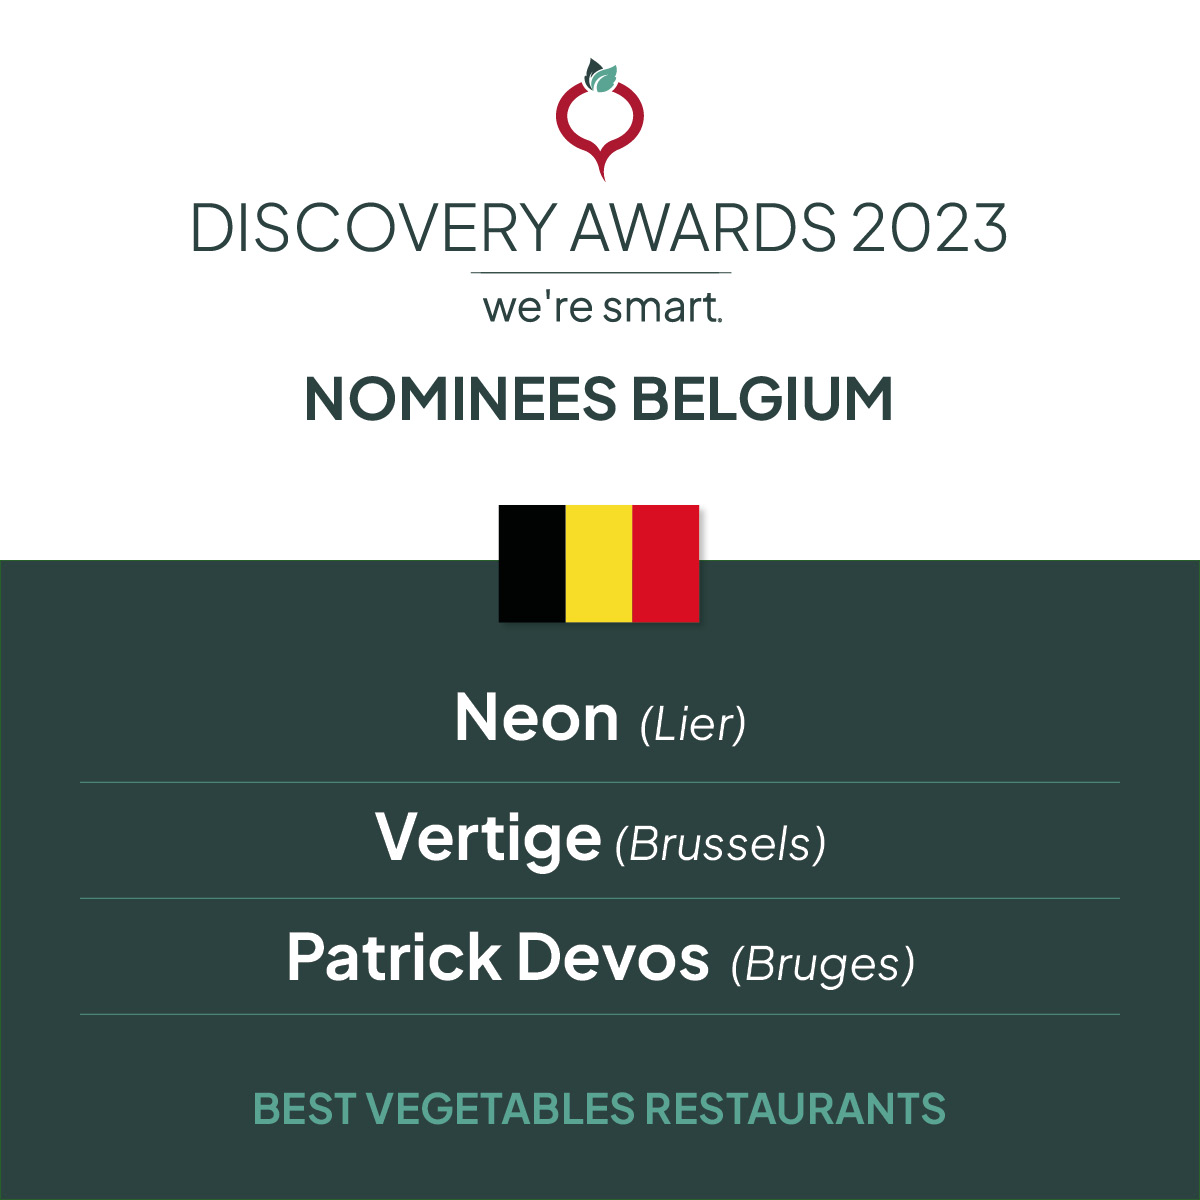 Nominees Belgium